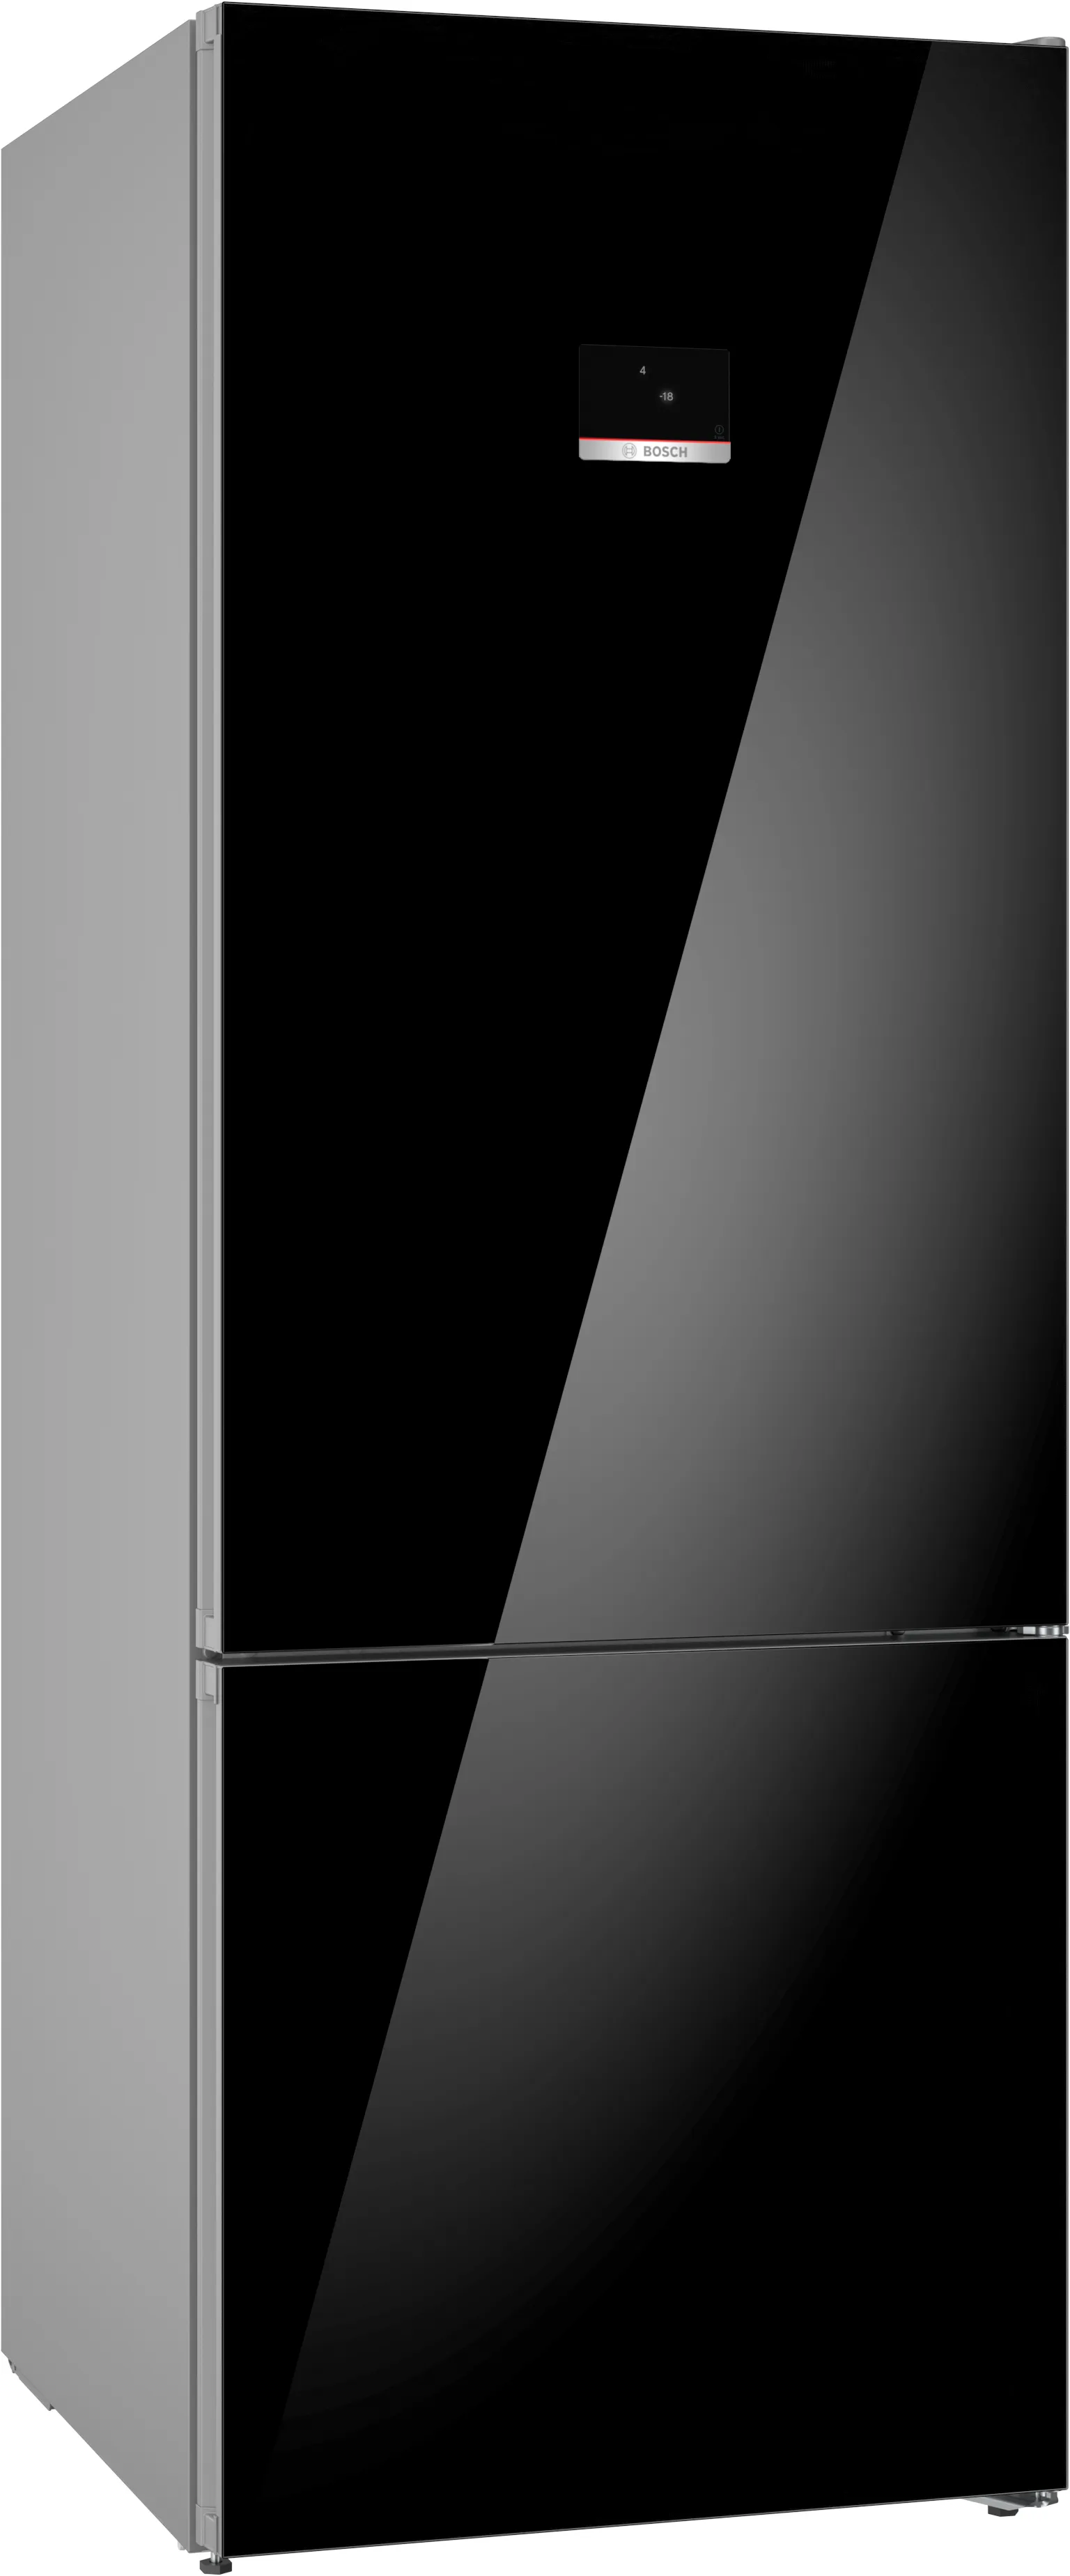 Série 6 Combiné avec congélateur en bas pose-libre 193 x 70 cm Noir 